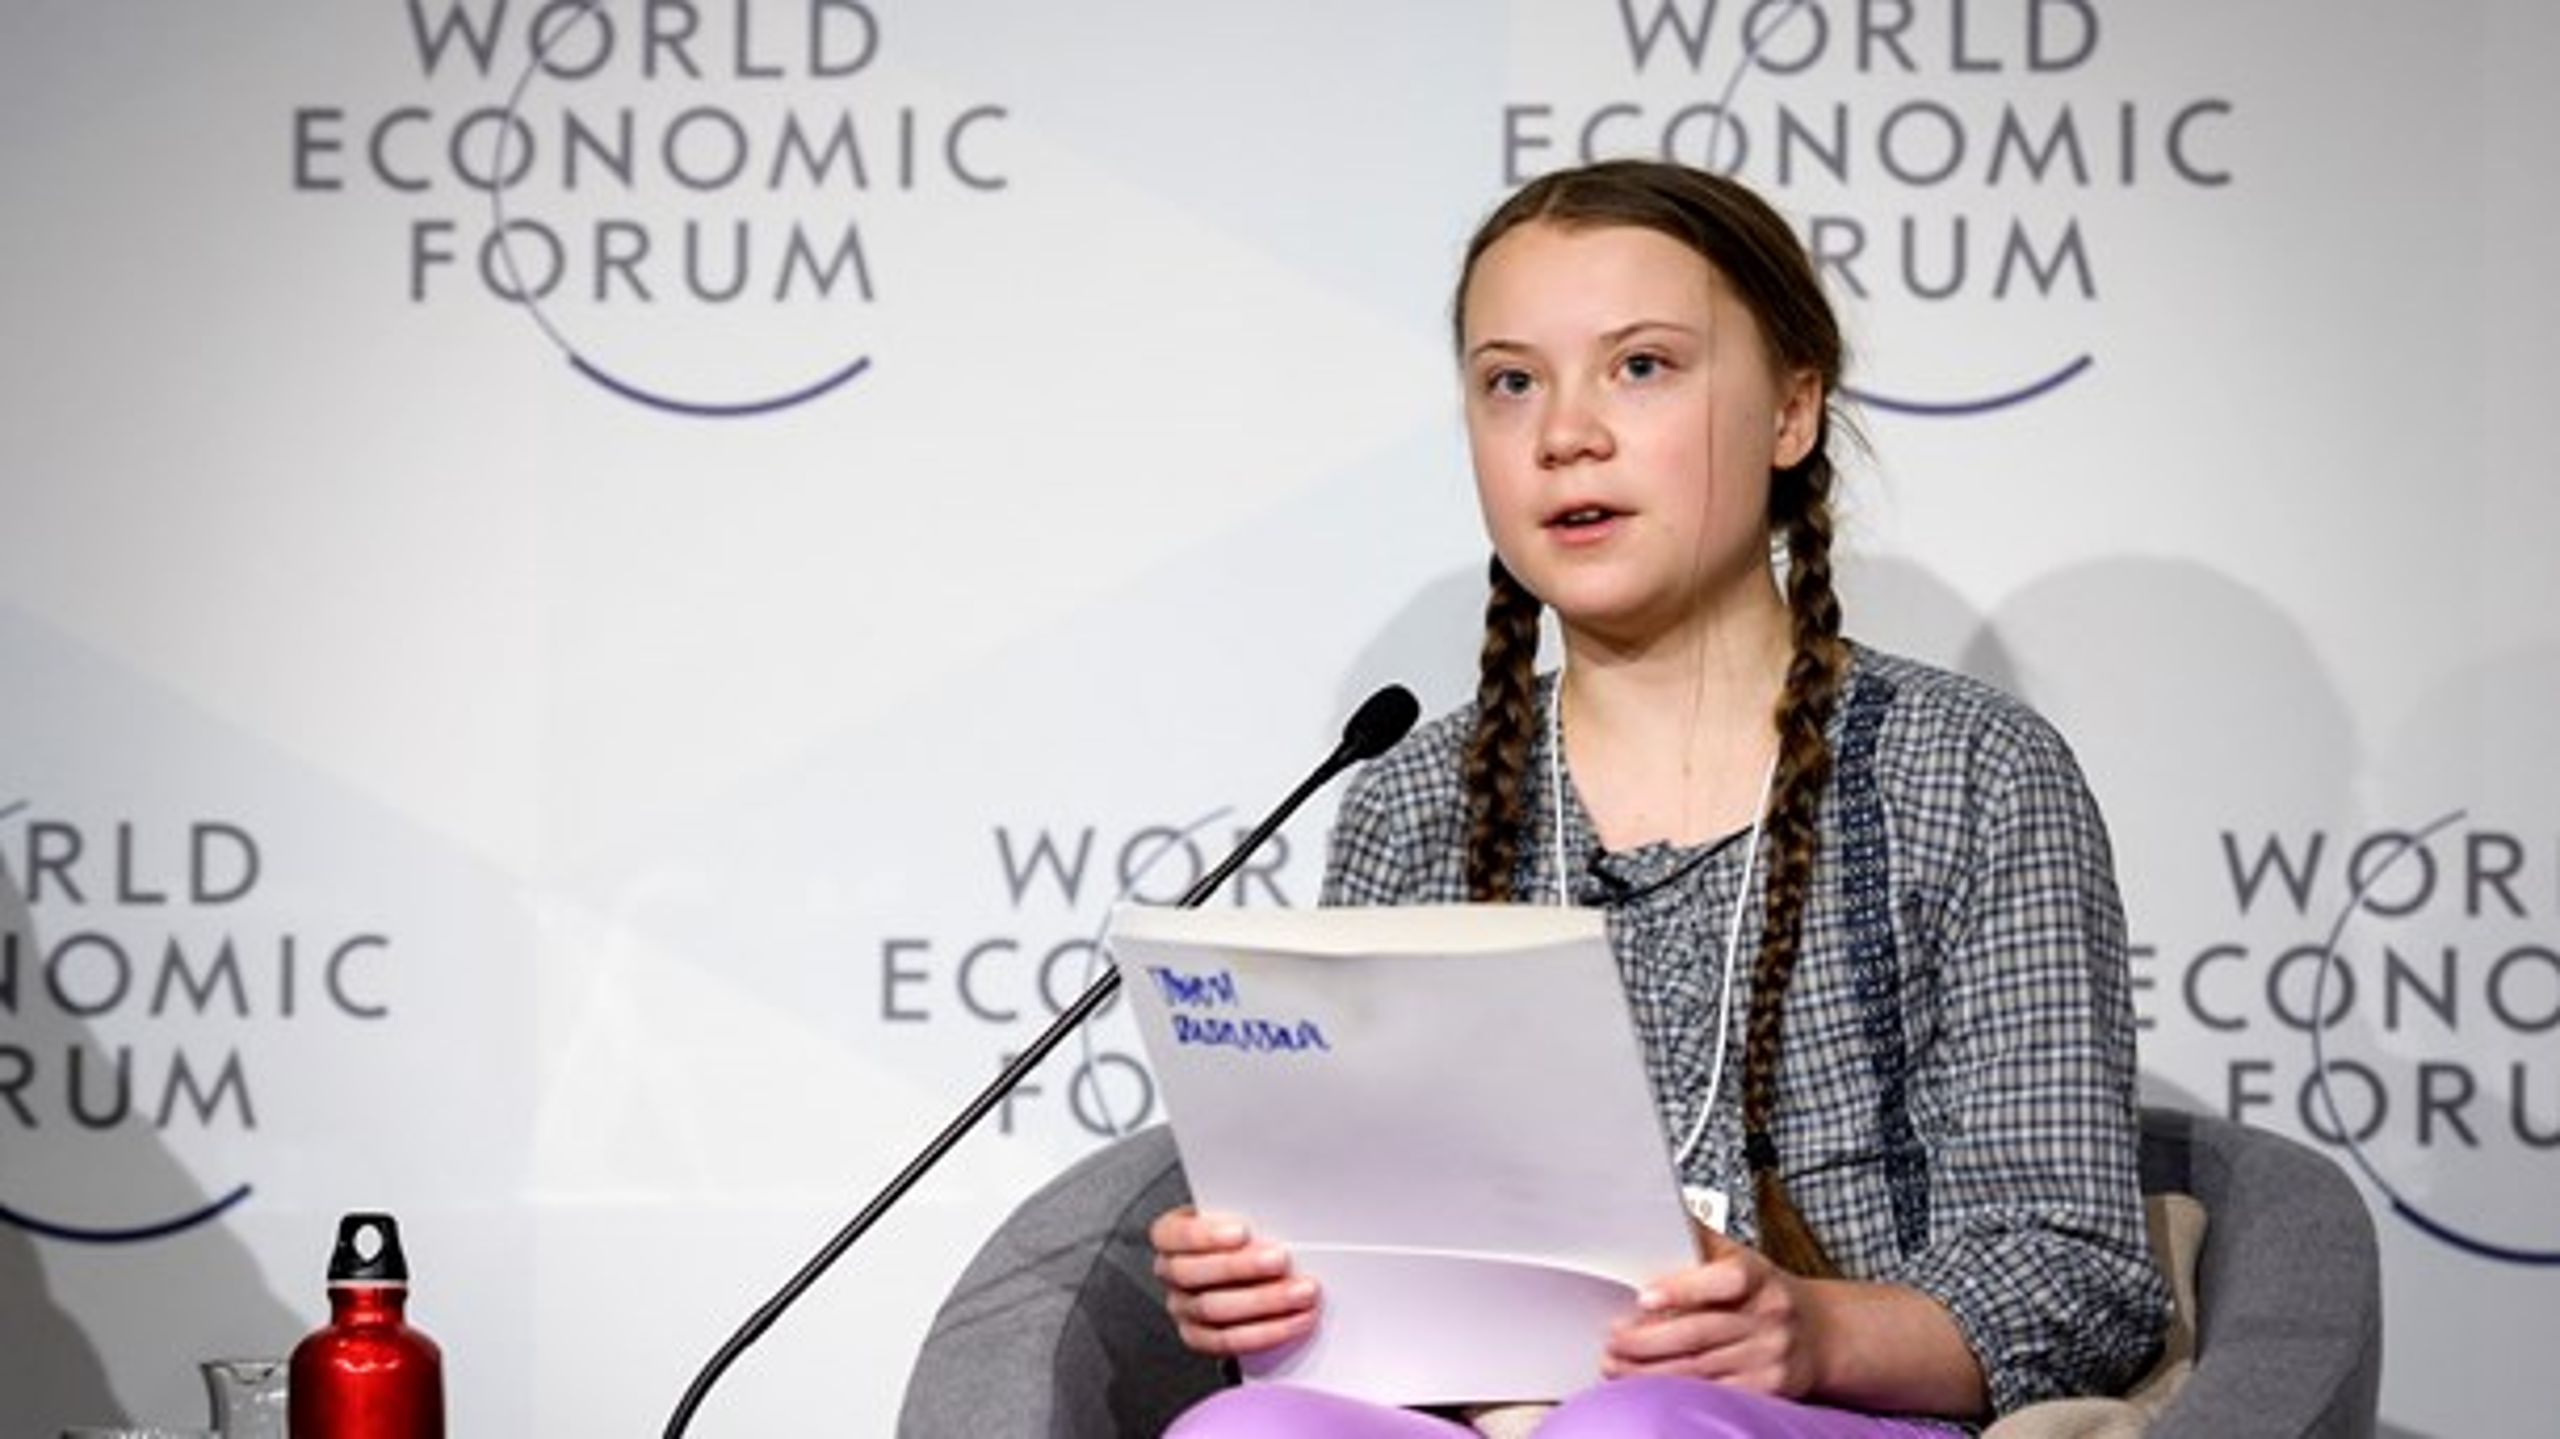 "Nu kommer Greta Thunberg att tala även i Davos, vilken reaktion kommer vi då att få se från världens mäktigaste?"